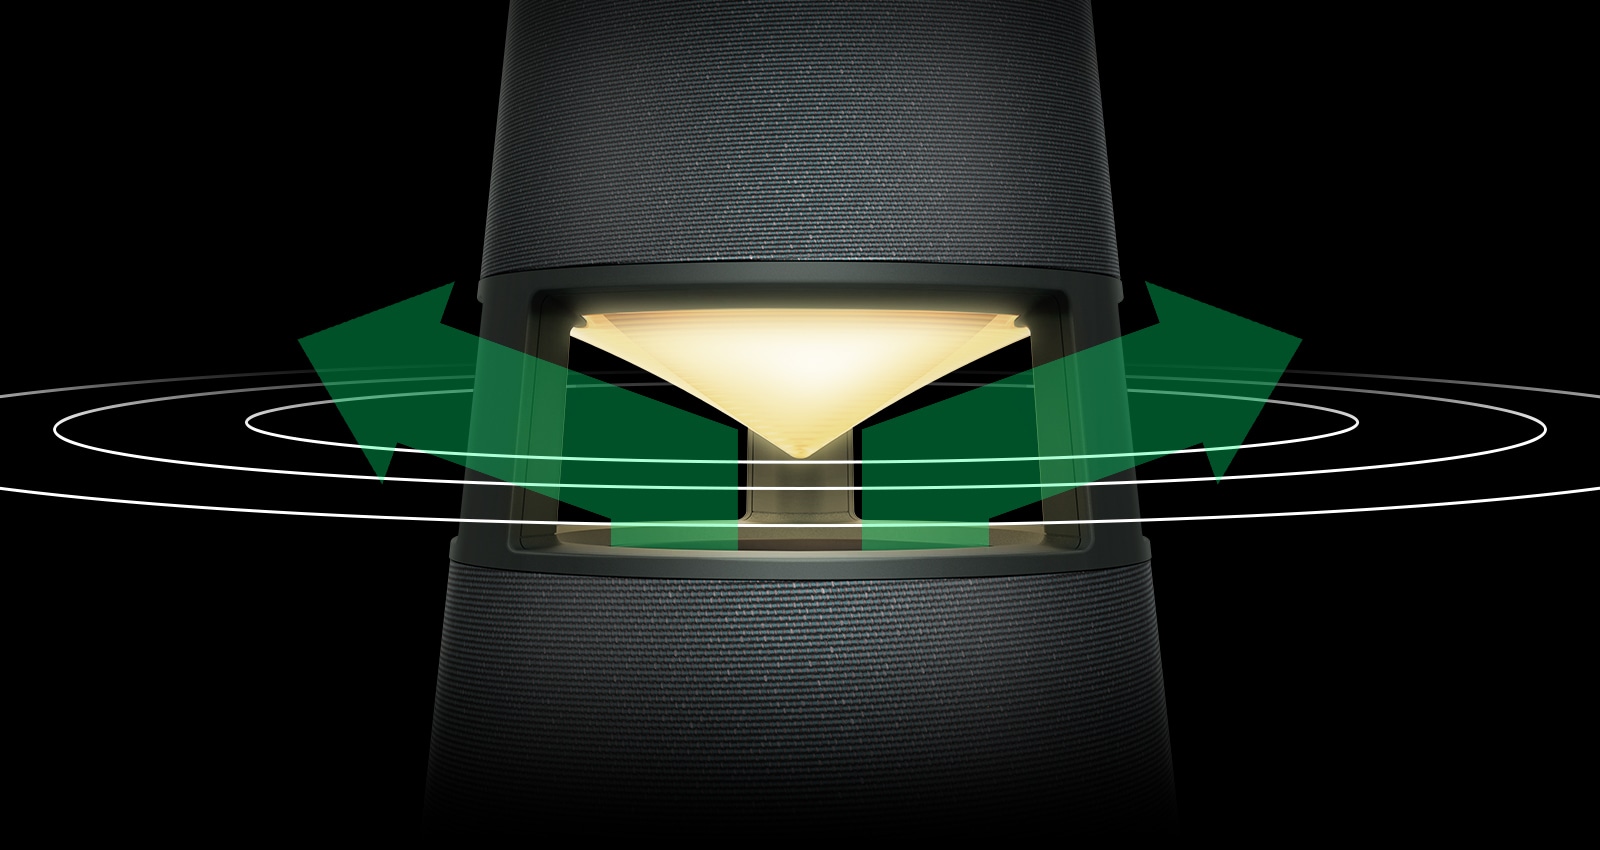 Obraz oświetlonego na żółto głośnika XBOOM 360 z zielonymi strzałkami po lewej i prawej stronie reflektora i falami dźwiękowymi rozchodzącymi się wokół nich.